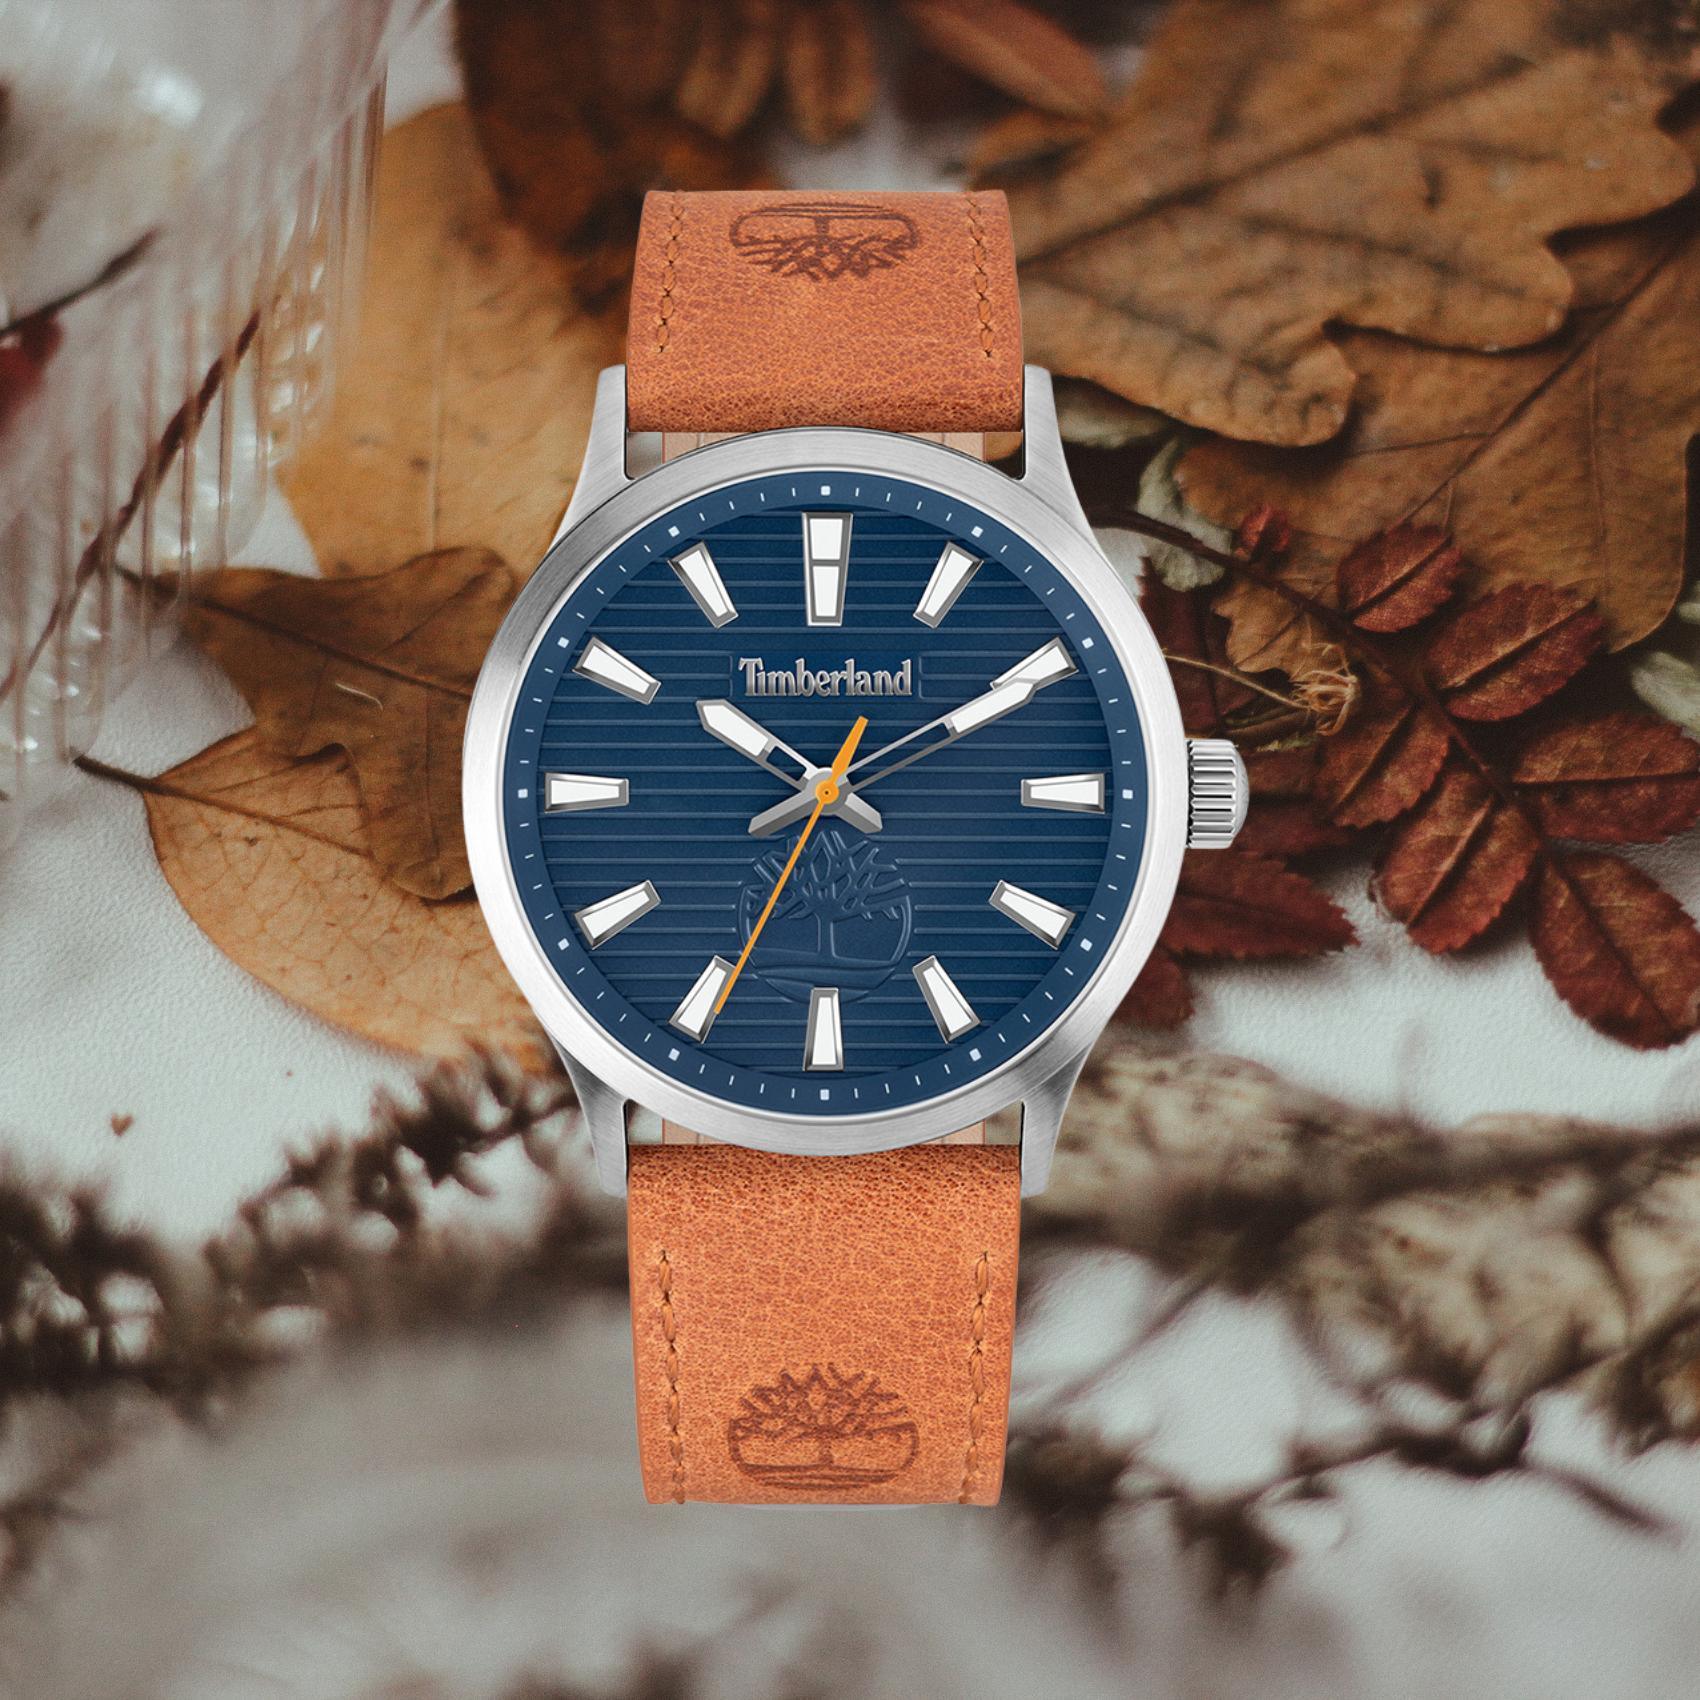 Αντρικό ρολόι Timberland Trumbull TDWGA2152001 με καφέ δερμάτινο λουράκι και μπλε καντράν διαμέτρου 45mm.